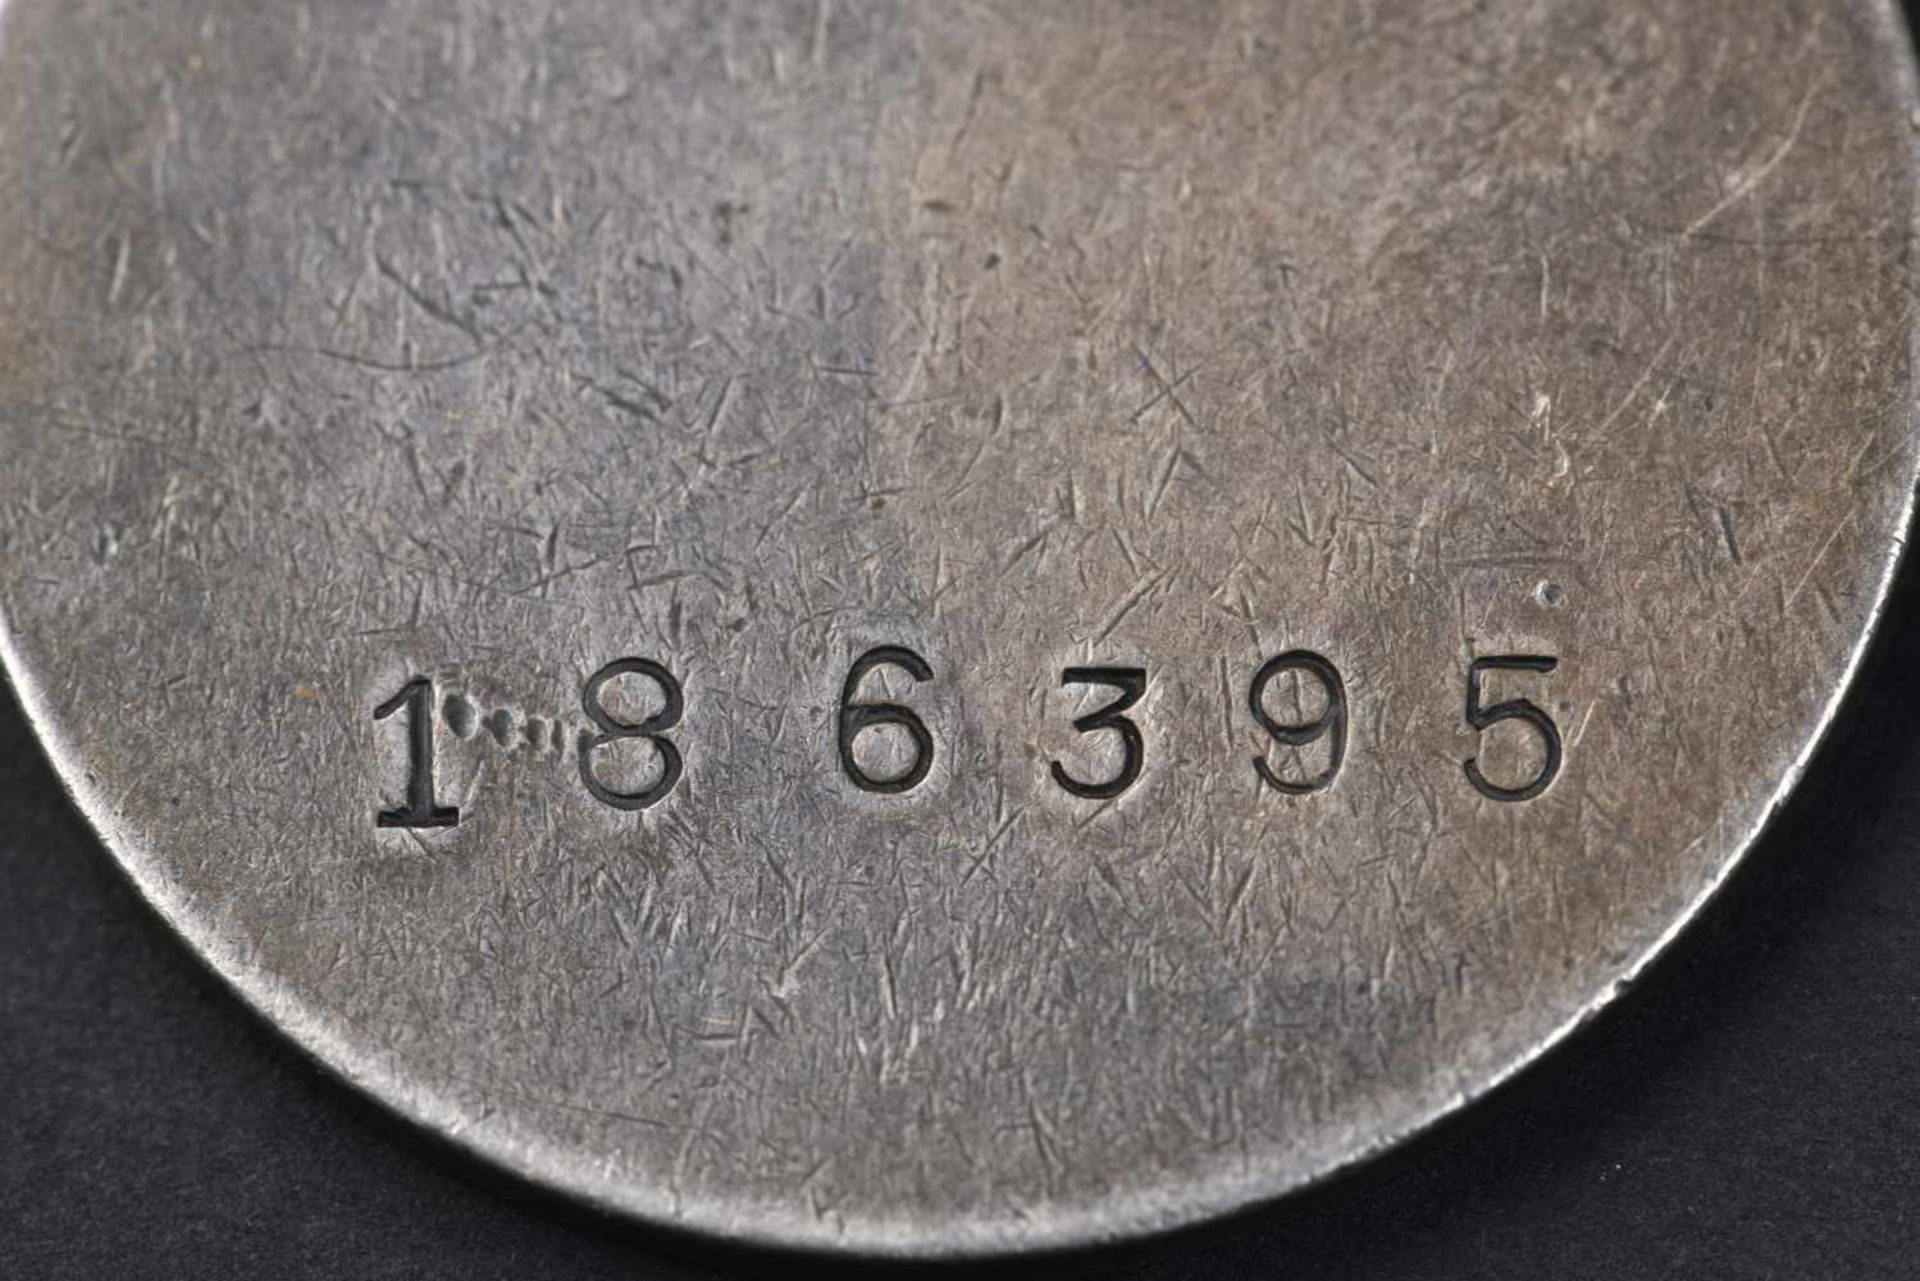 Médaille pour la Bravoure n° 186395, attribuée le 16 janvier 1943, au mitrailleur TOIGER - Bild 3 aus 3